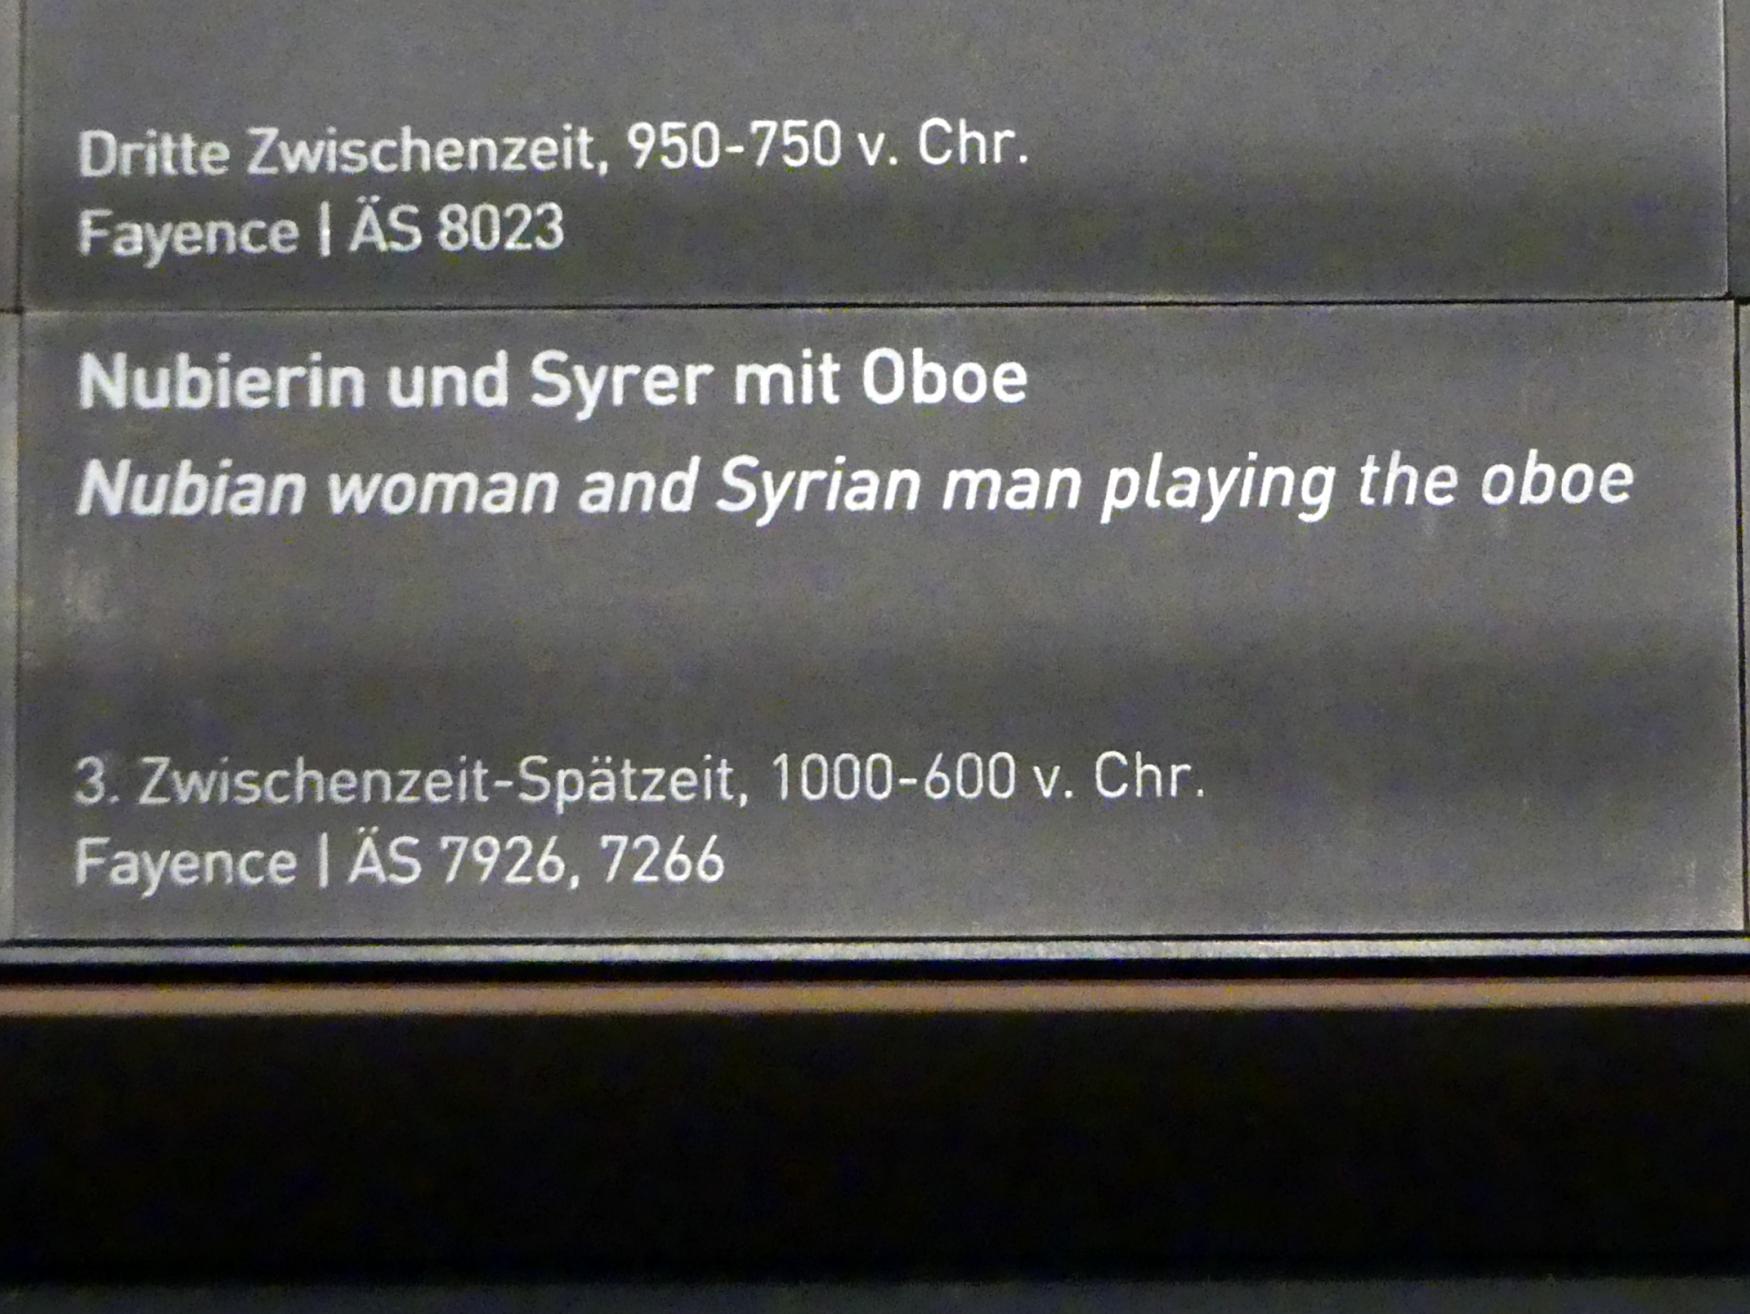 Nubierin mit Oboe, 1000 - 600 v. Chr., Bild 2/2